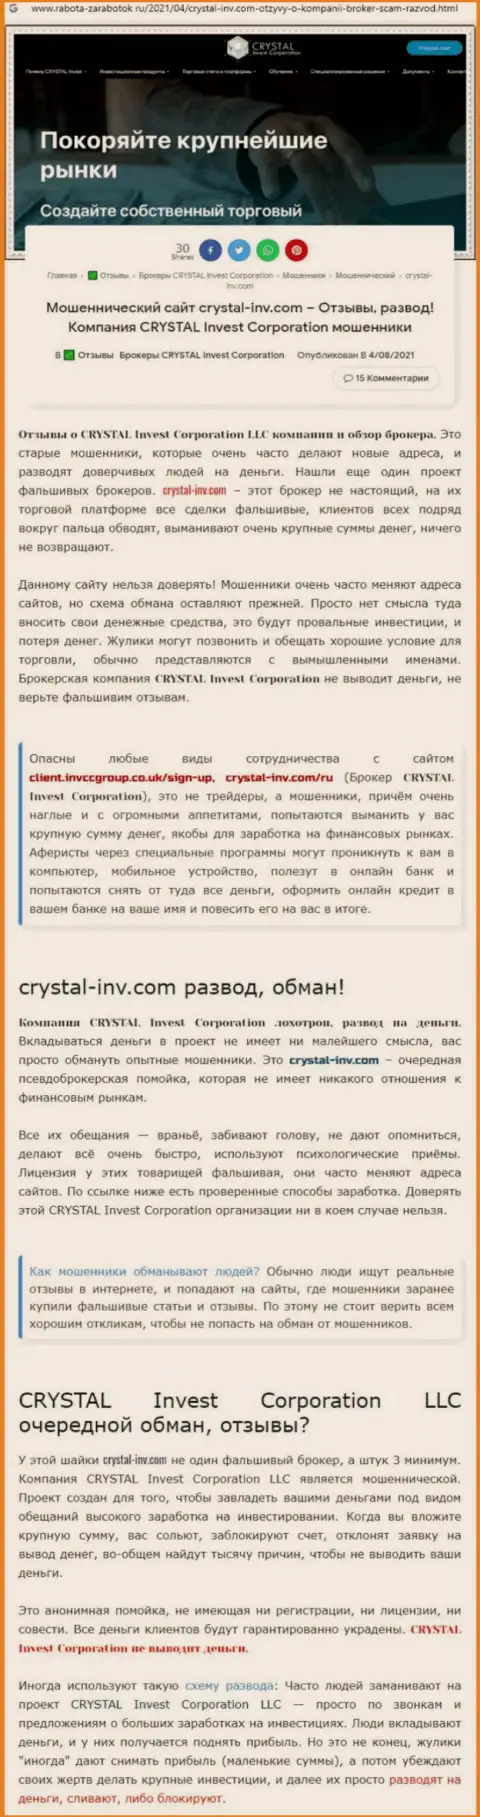 Материал, разоблачающий компанию Crystal Invest Corporation, позаимствованный с сайта с обзорами различных контор